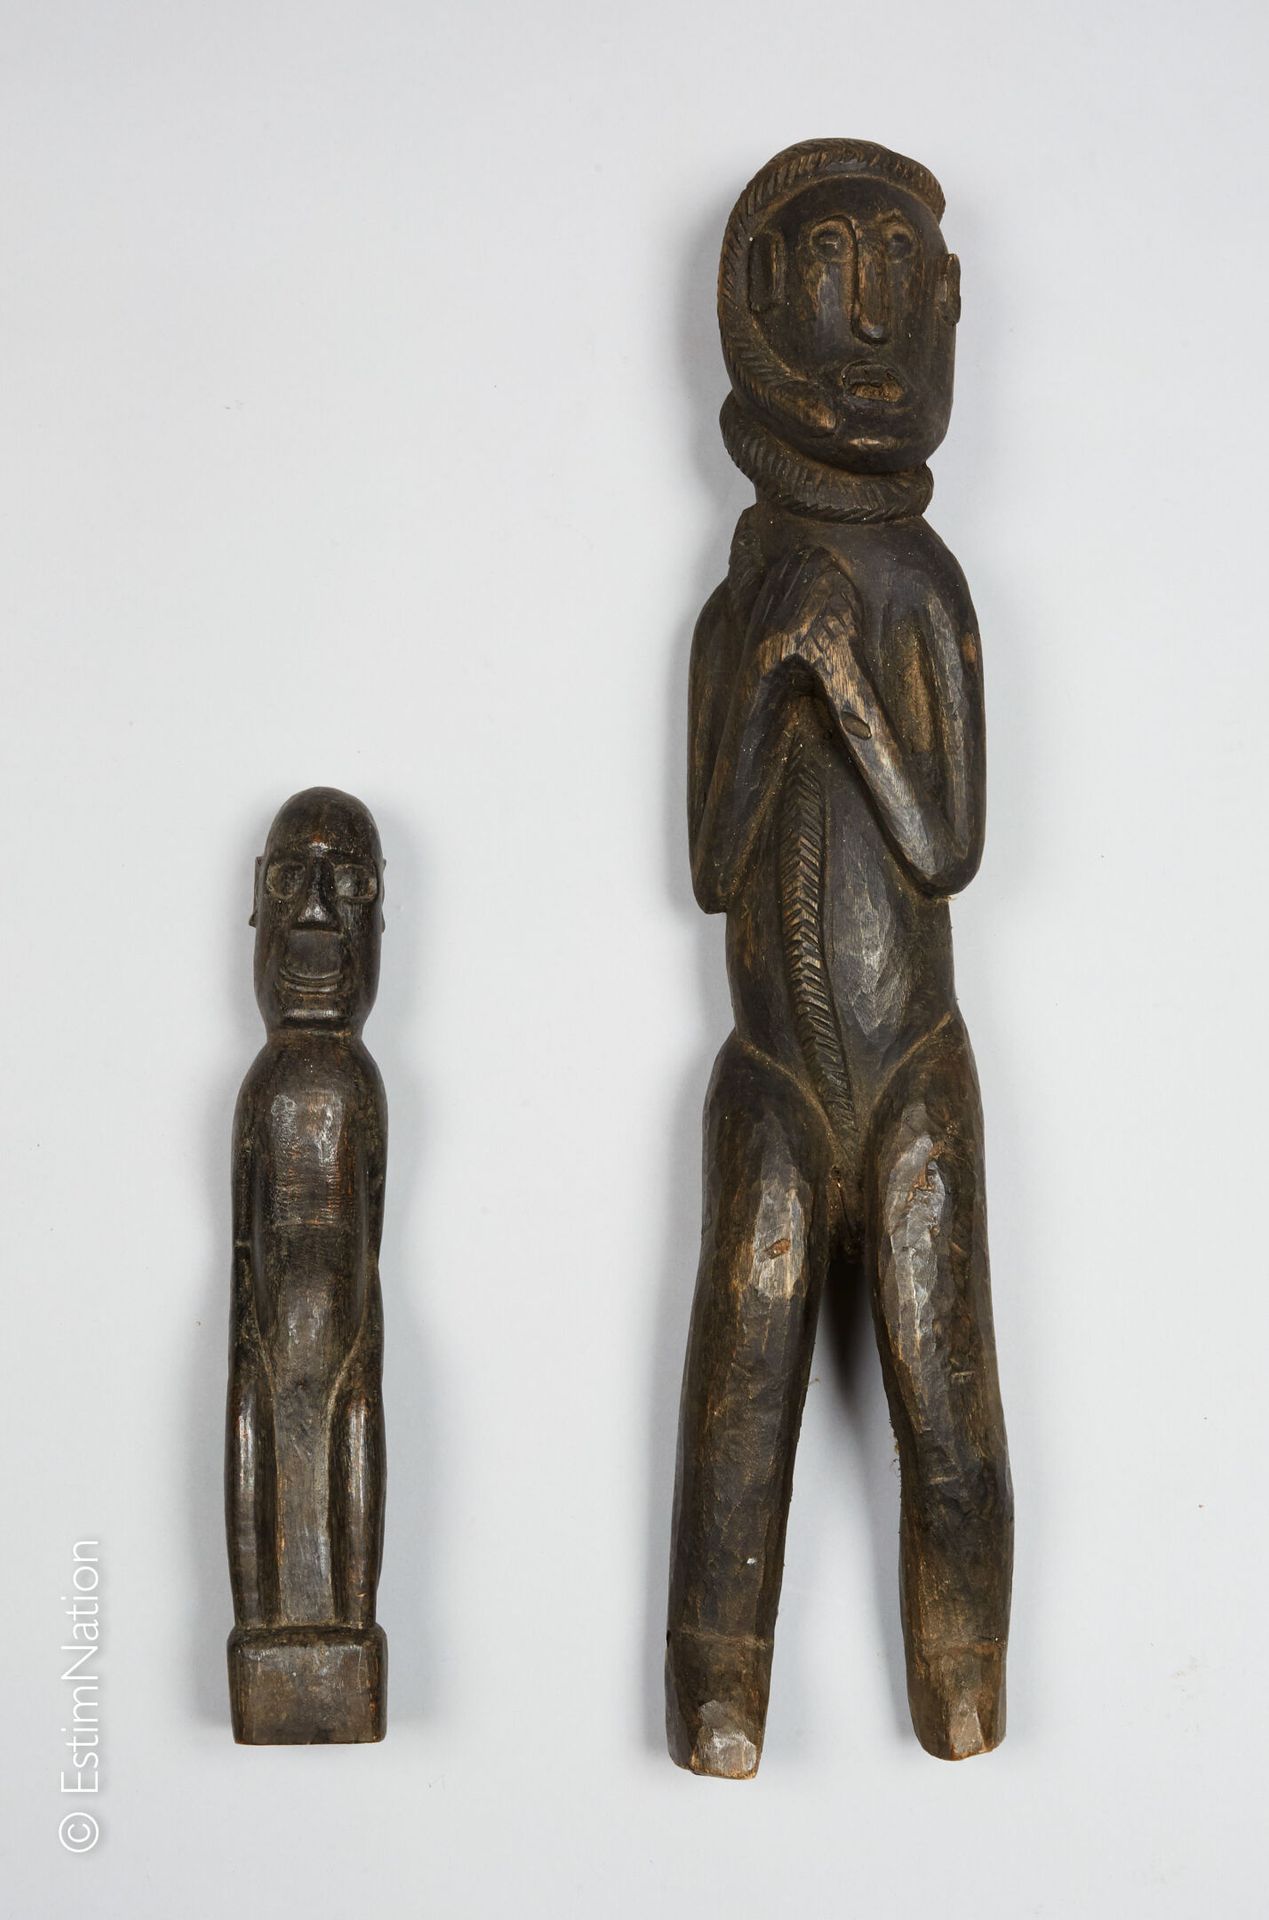 INDONÉSIE 印度尼西亚



两件带有黑色铜锈的木雕题材，第一件表现的是一个面无表情的男人，双手放在胸前，周围有一条蛇，第二件表现的是一个坐着的男人，面&hellip;